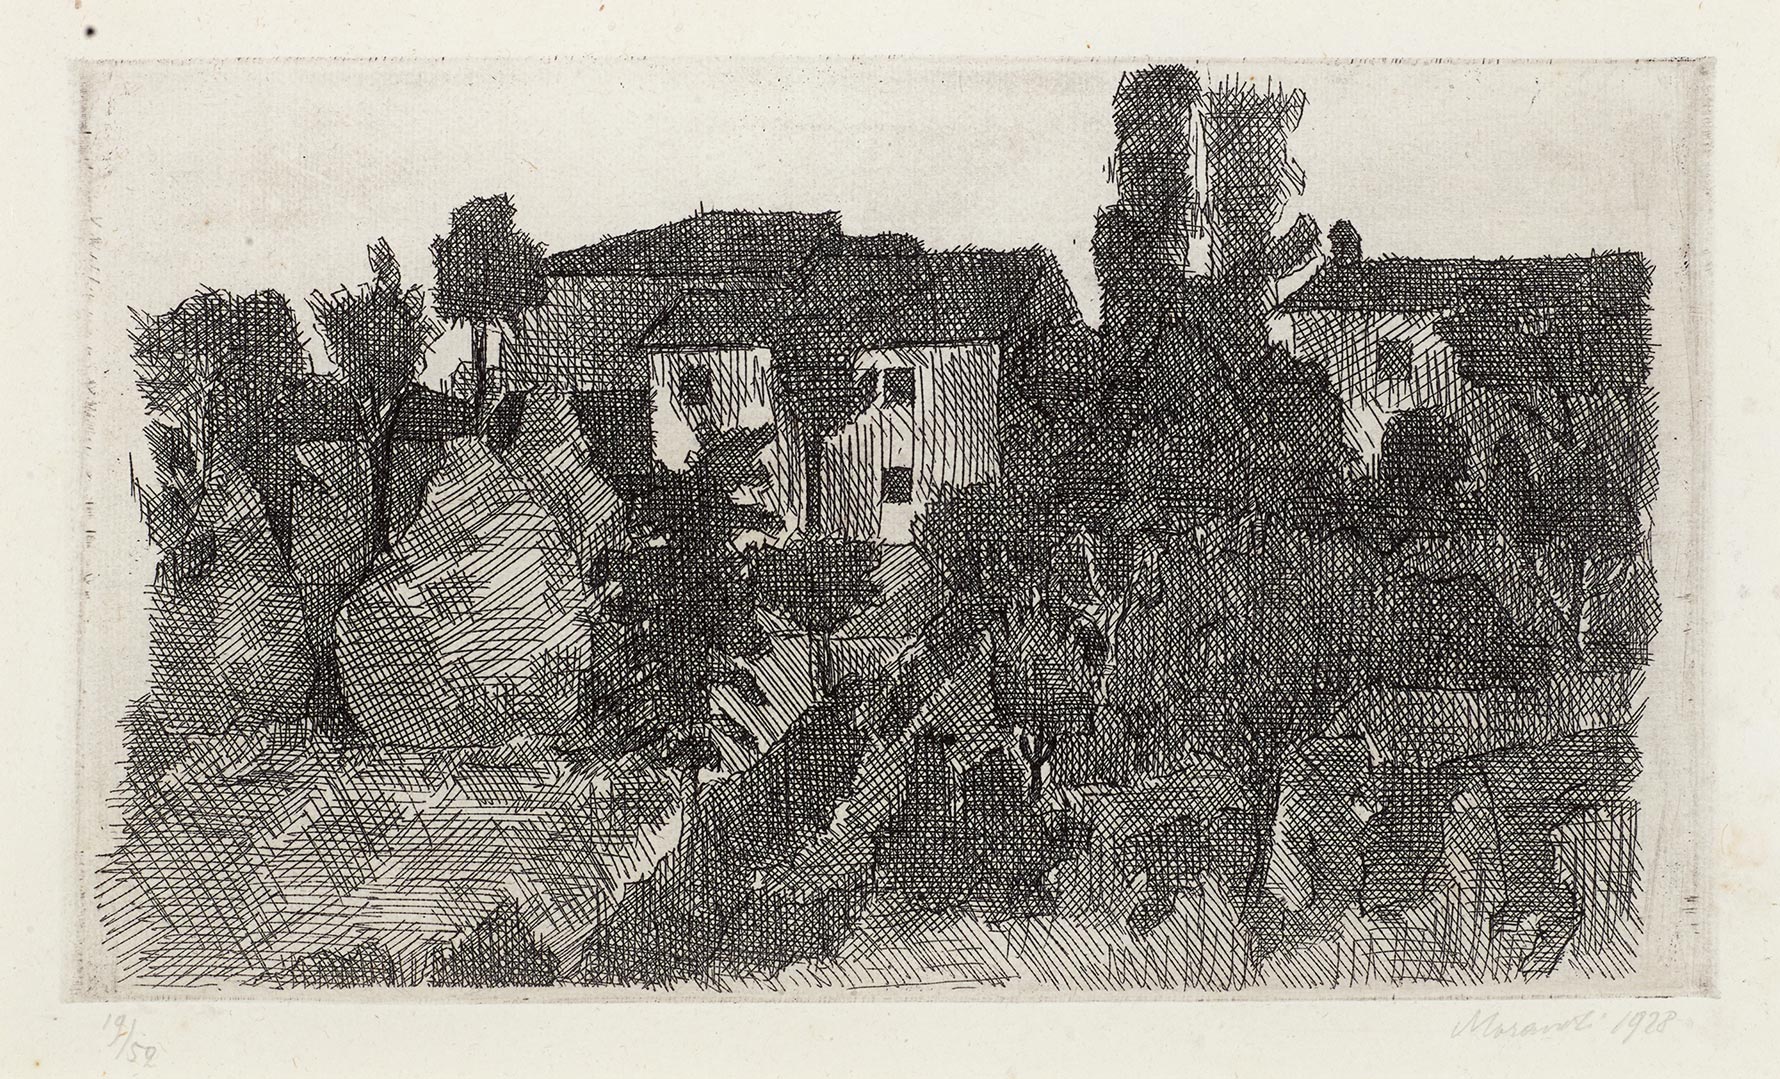 Giorgio Morandi, Hillside in the Evening, 1928